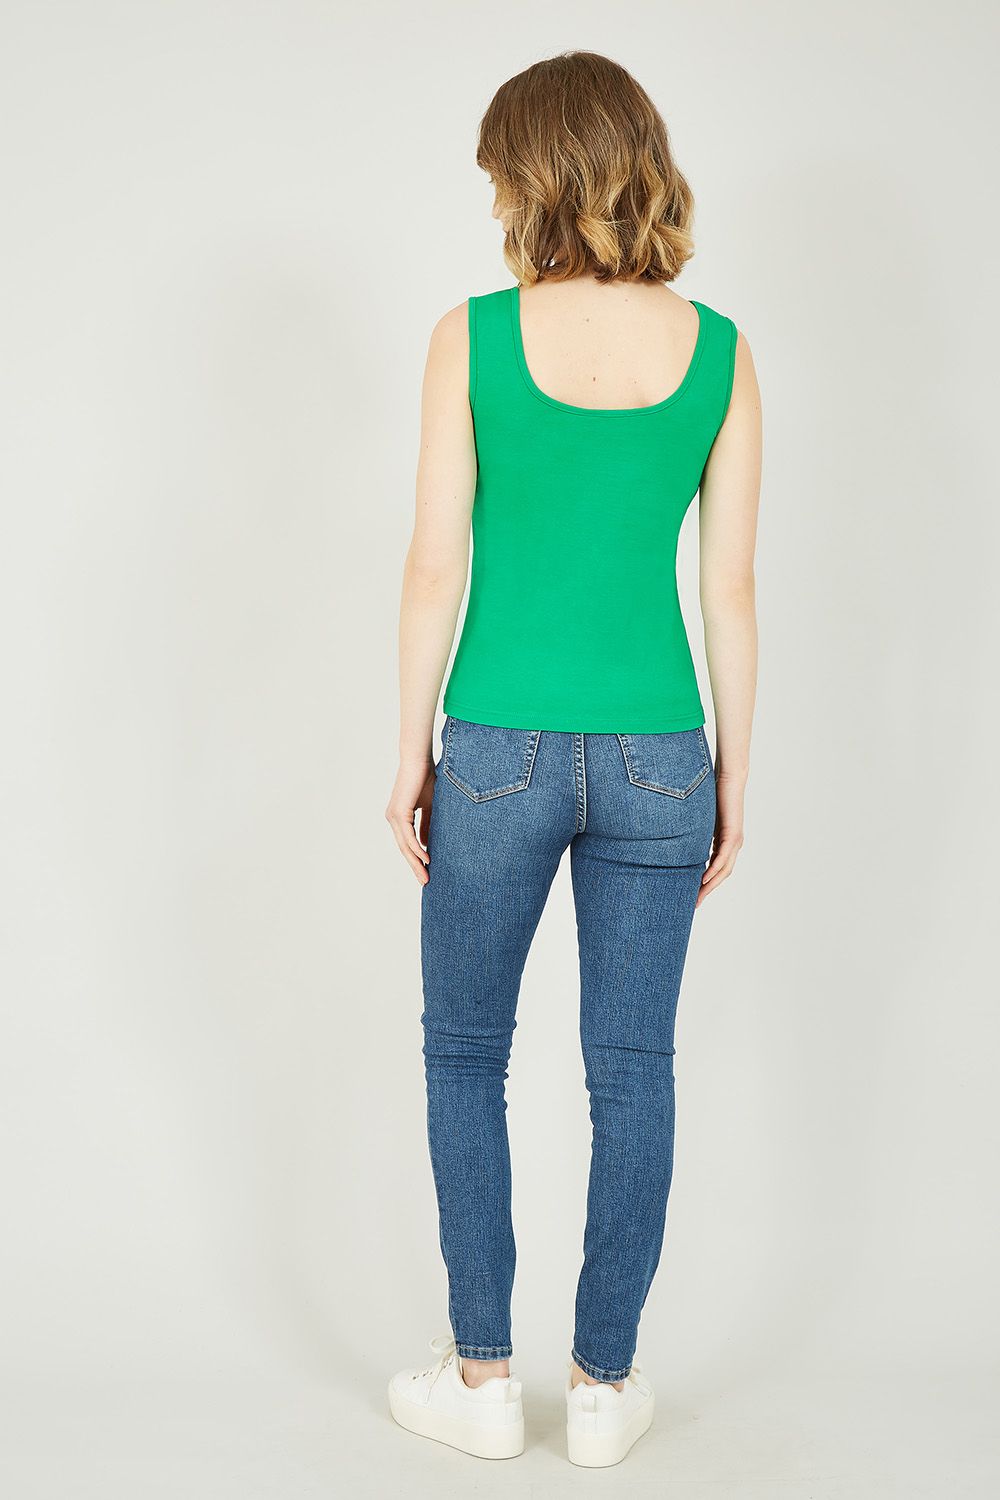 Sommigen noemen het een basic, wij noemen het must-have. Het Yumi groene hemdtopje is dit jaar het meest versleten kledingstuk in je garderobe. Het topje van 100% katoen is ademend, voelt zacht aan en is enorm veelzijdig. Hij heeft een klassieke pasvorm, ronde halslijn en is bijgesneden op de heupen. Combineer dit topje met je favoriete spijkerbroek of denim rok en sneakers voor een nonchalante look. Onze favoriete manier om het te dragen is met jeans en een lange kimono voor die koele lentemiddagen.